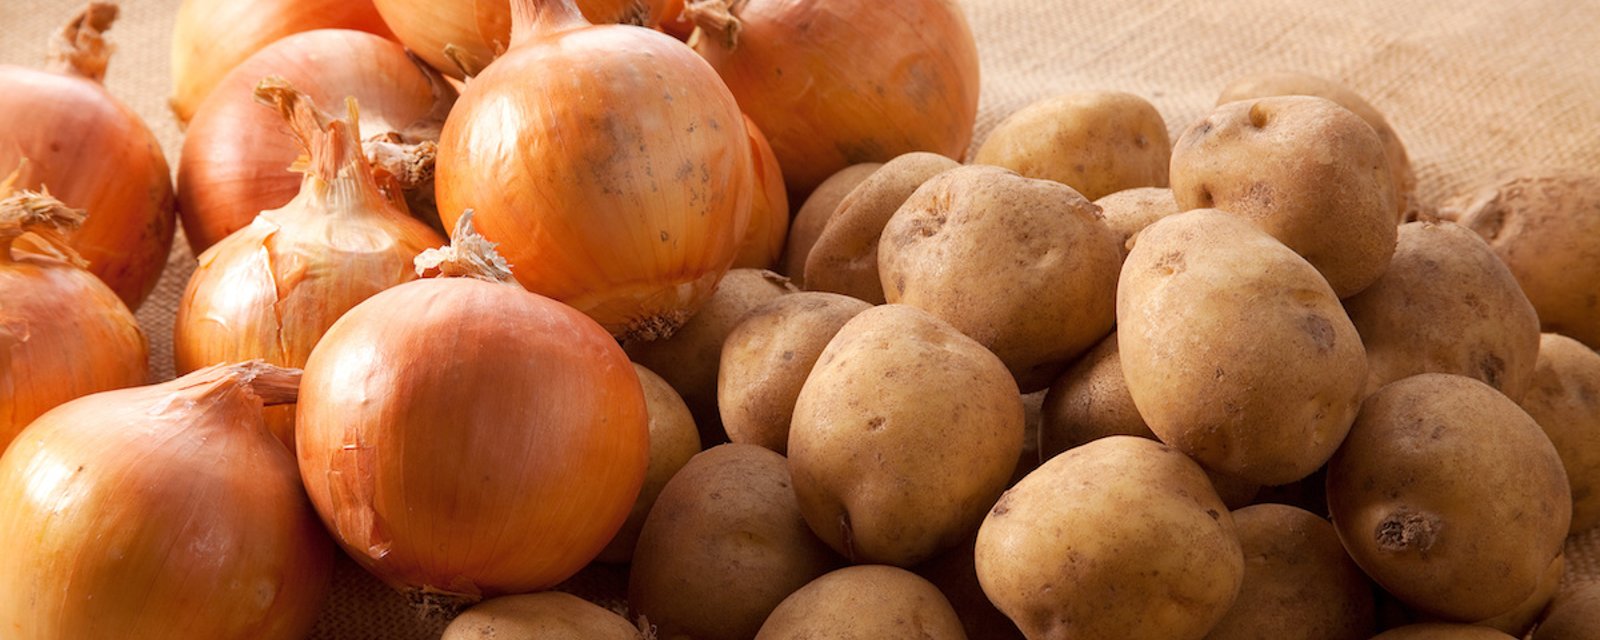 Comment bien conserver les pommes de terre et les oignons